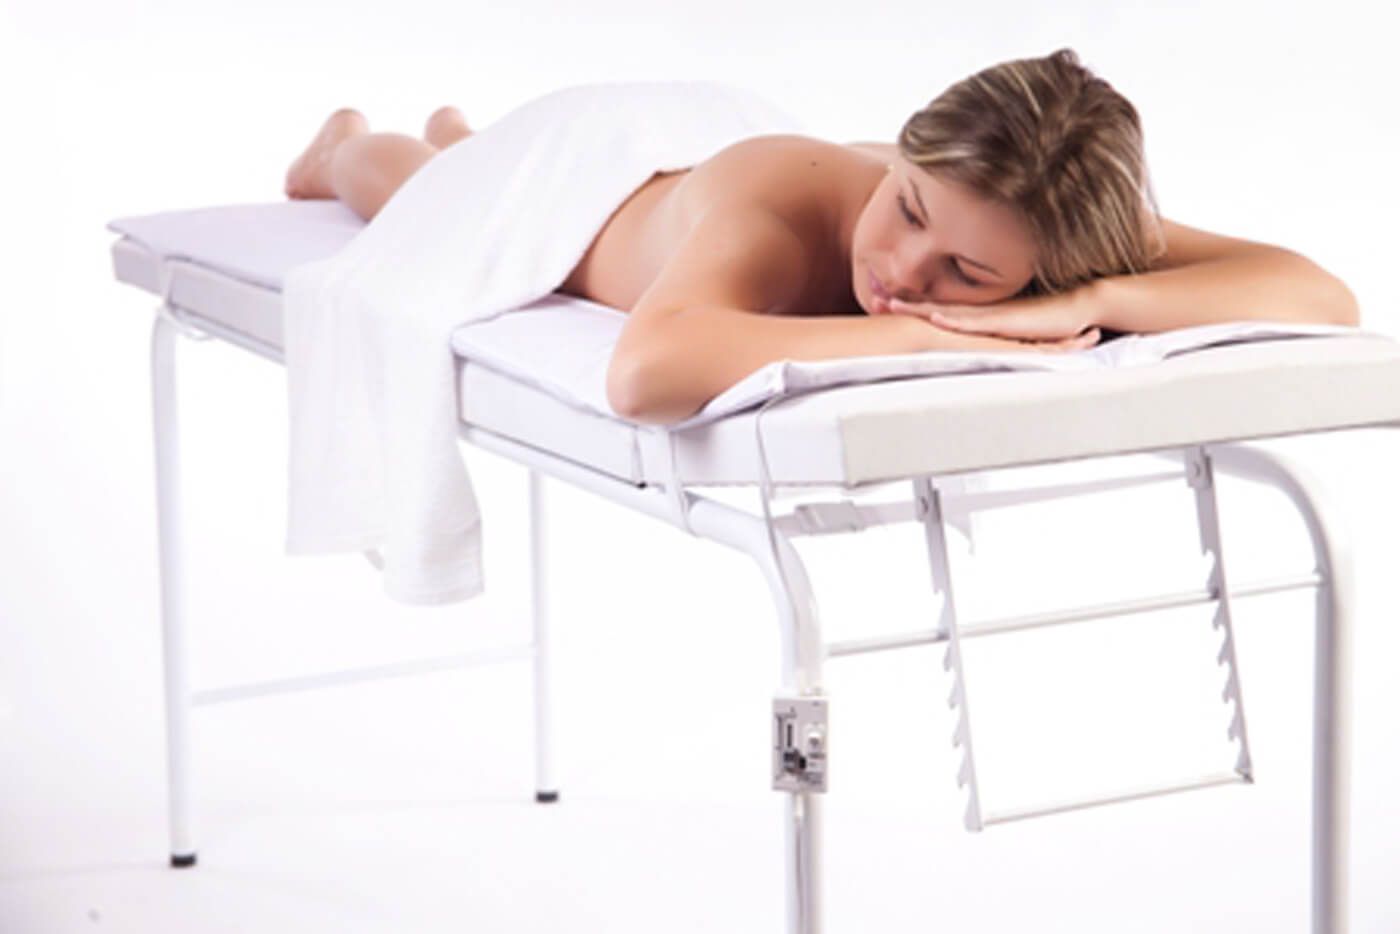 Colchonete Térmico Massagem en Napa Branco 1,80 x 0,60m Bivolt - Conforto e Terapia  - Cirúrgica Passos